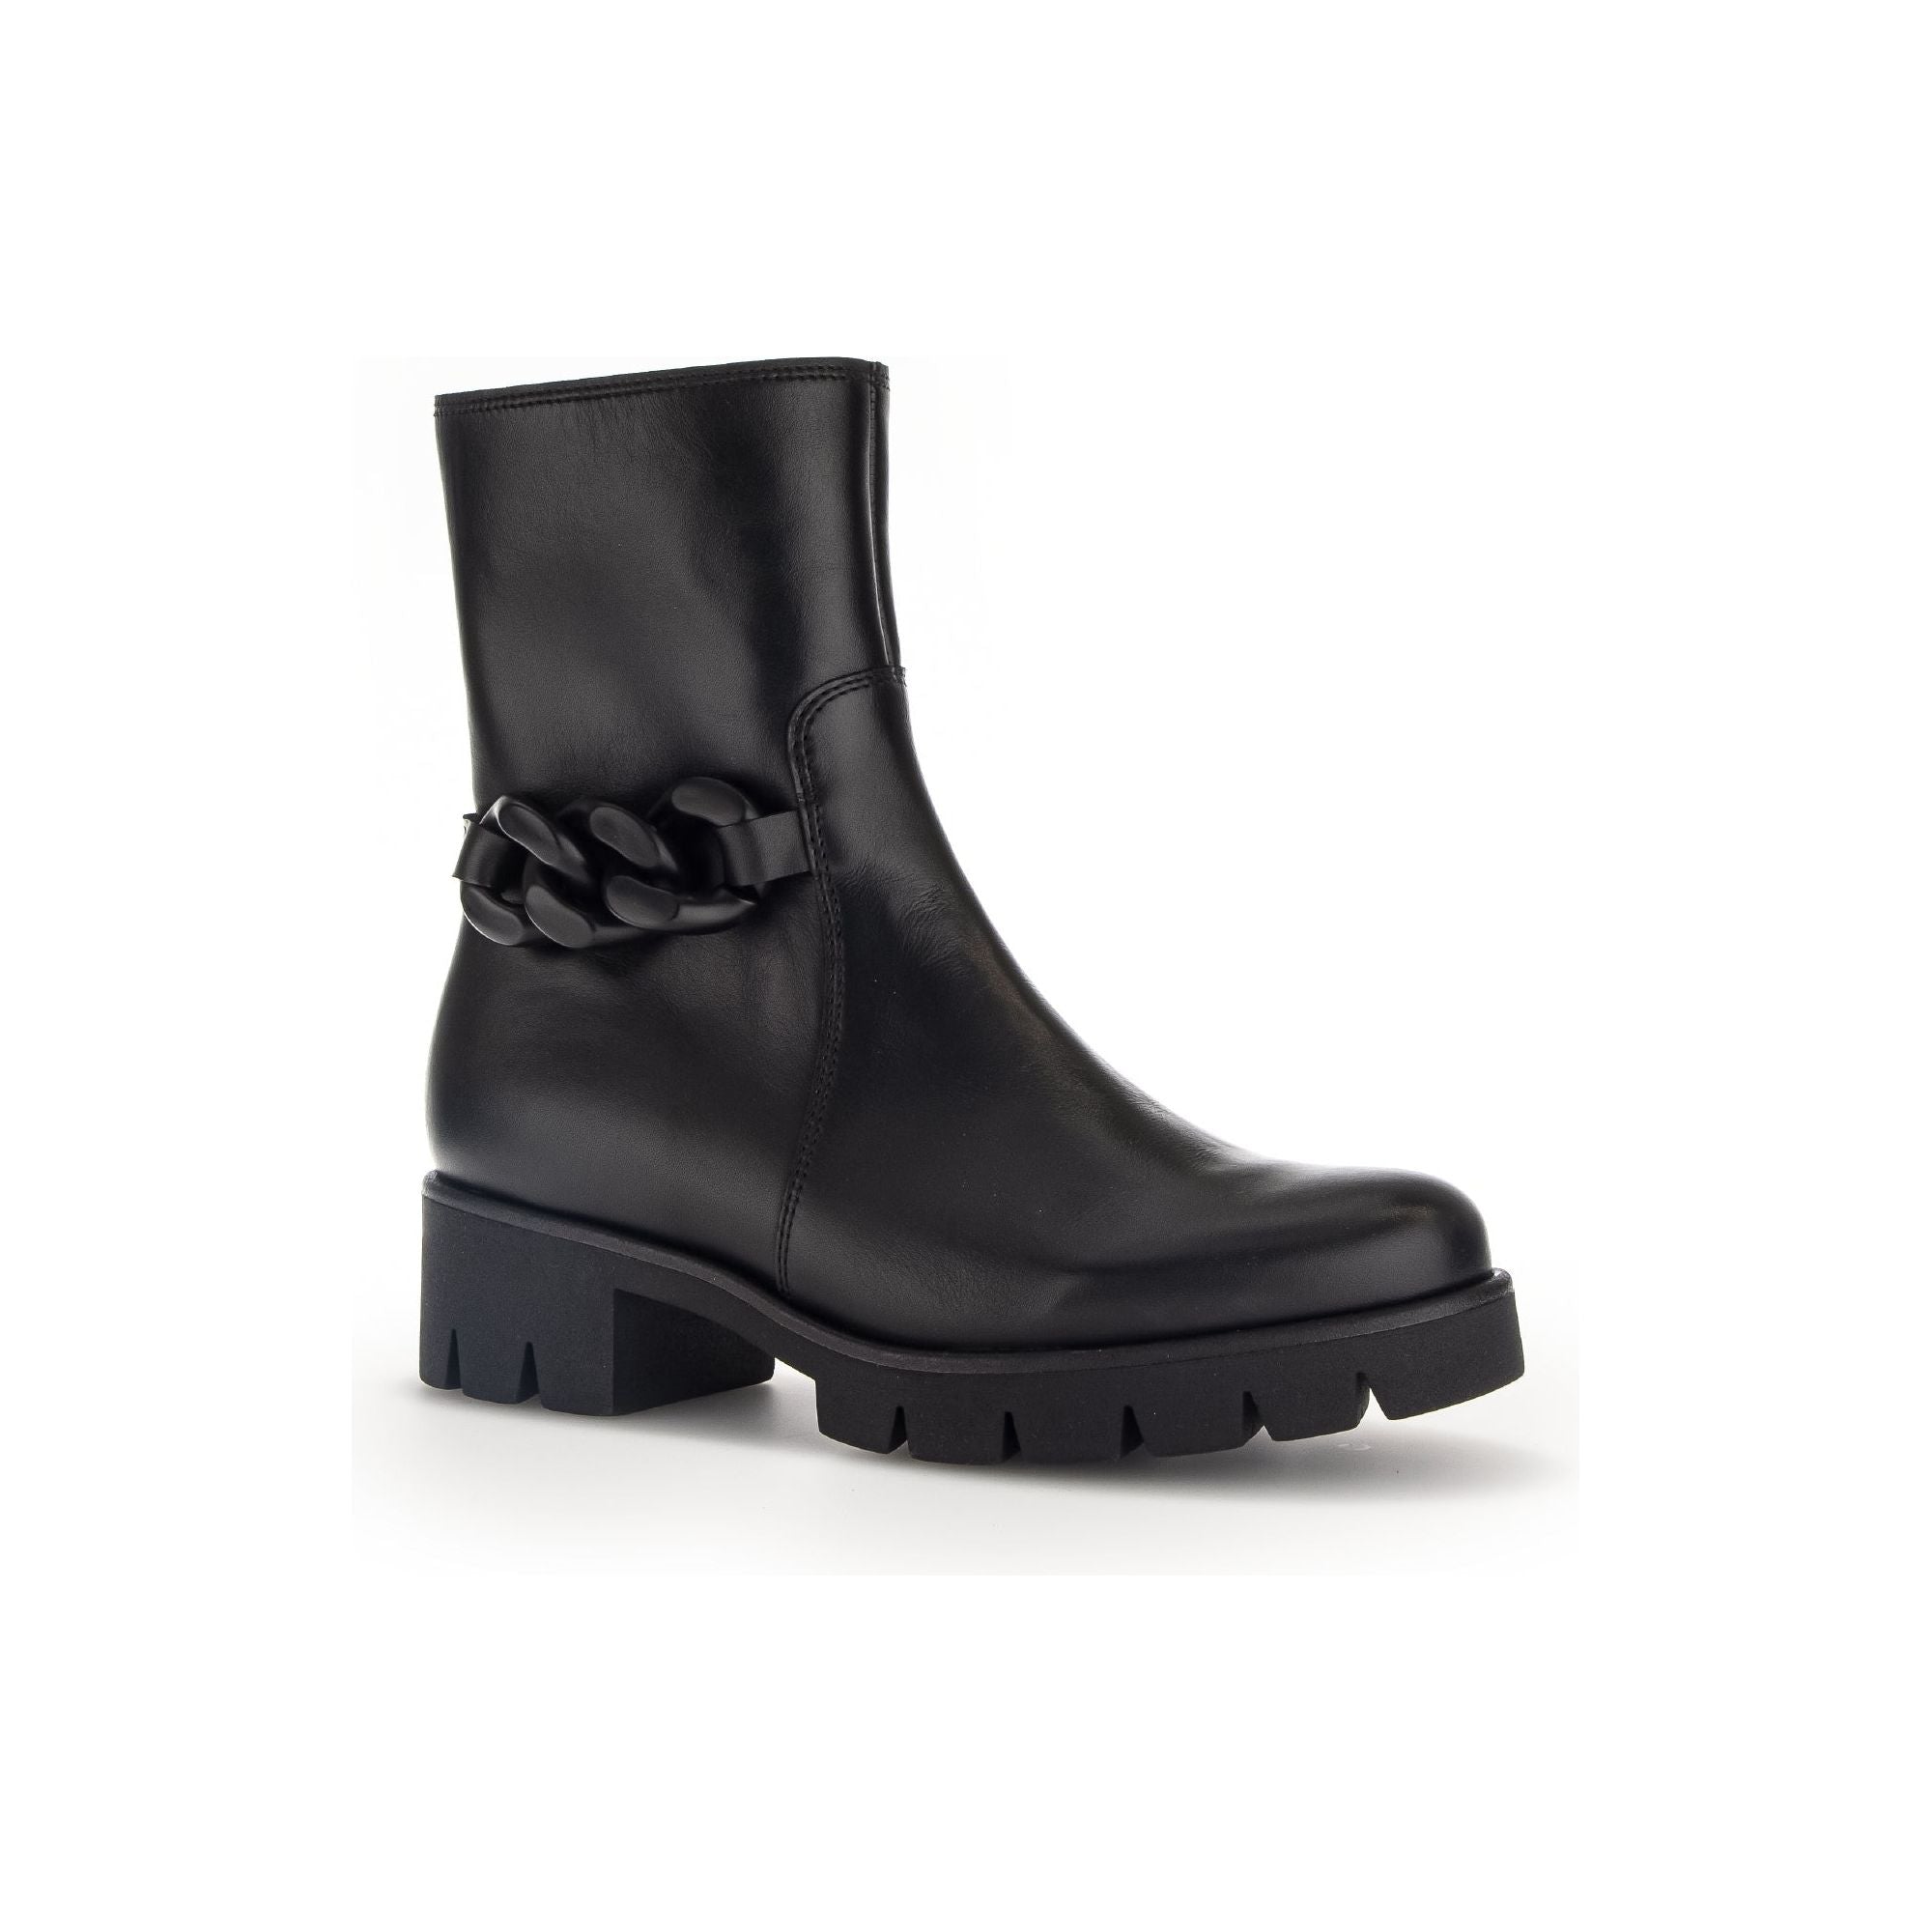 Gabor Barletta (31.713.27) - Ladies Ankle Boot in Black . Gabor |  Wisemans | Bantry | Shoe Shop| West Cork | Ireland